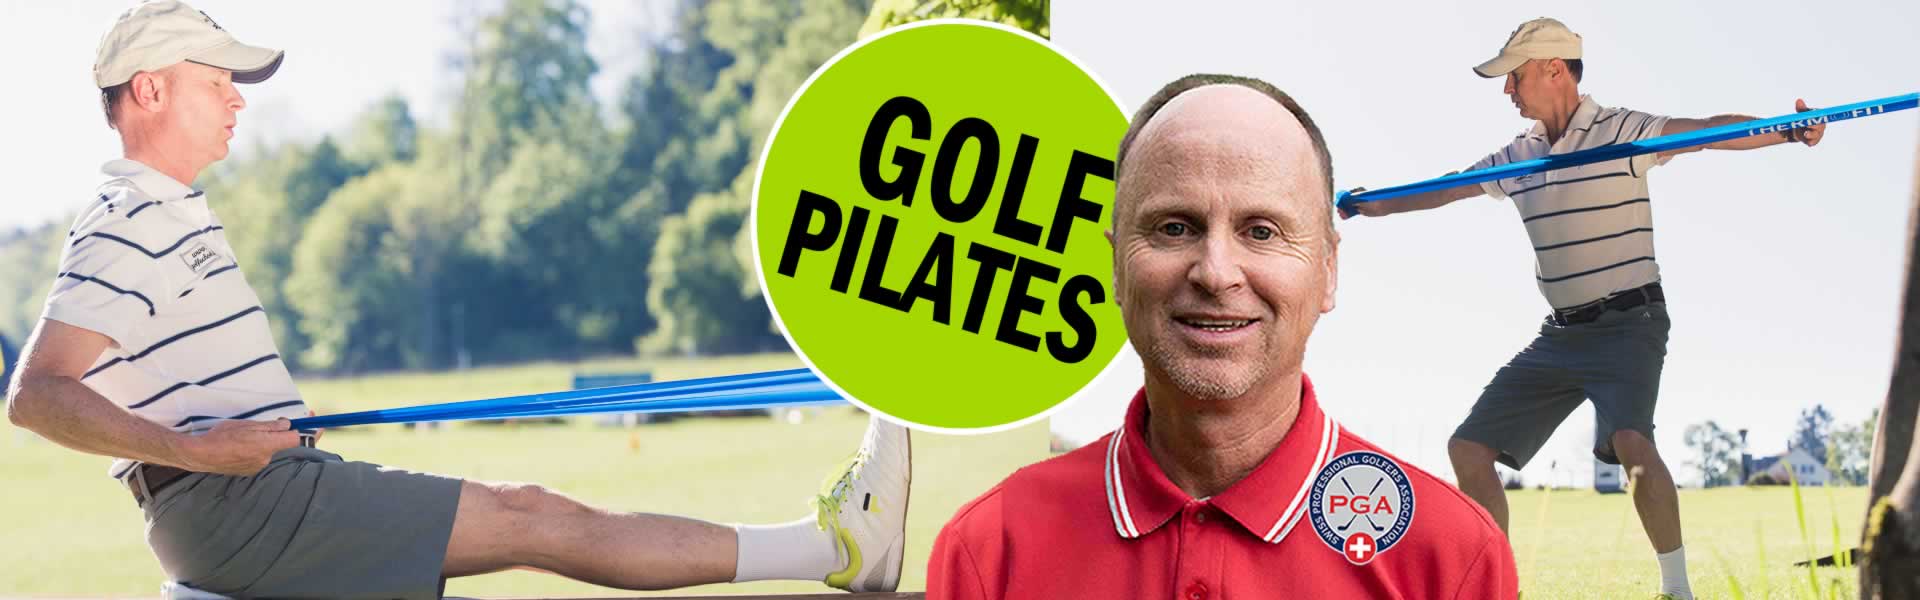 Bilder-Golf-Pilates-Gesundheit-Zuerich-Golf-Pro-Thierry-Rombaldi-03